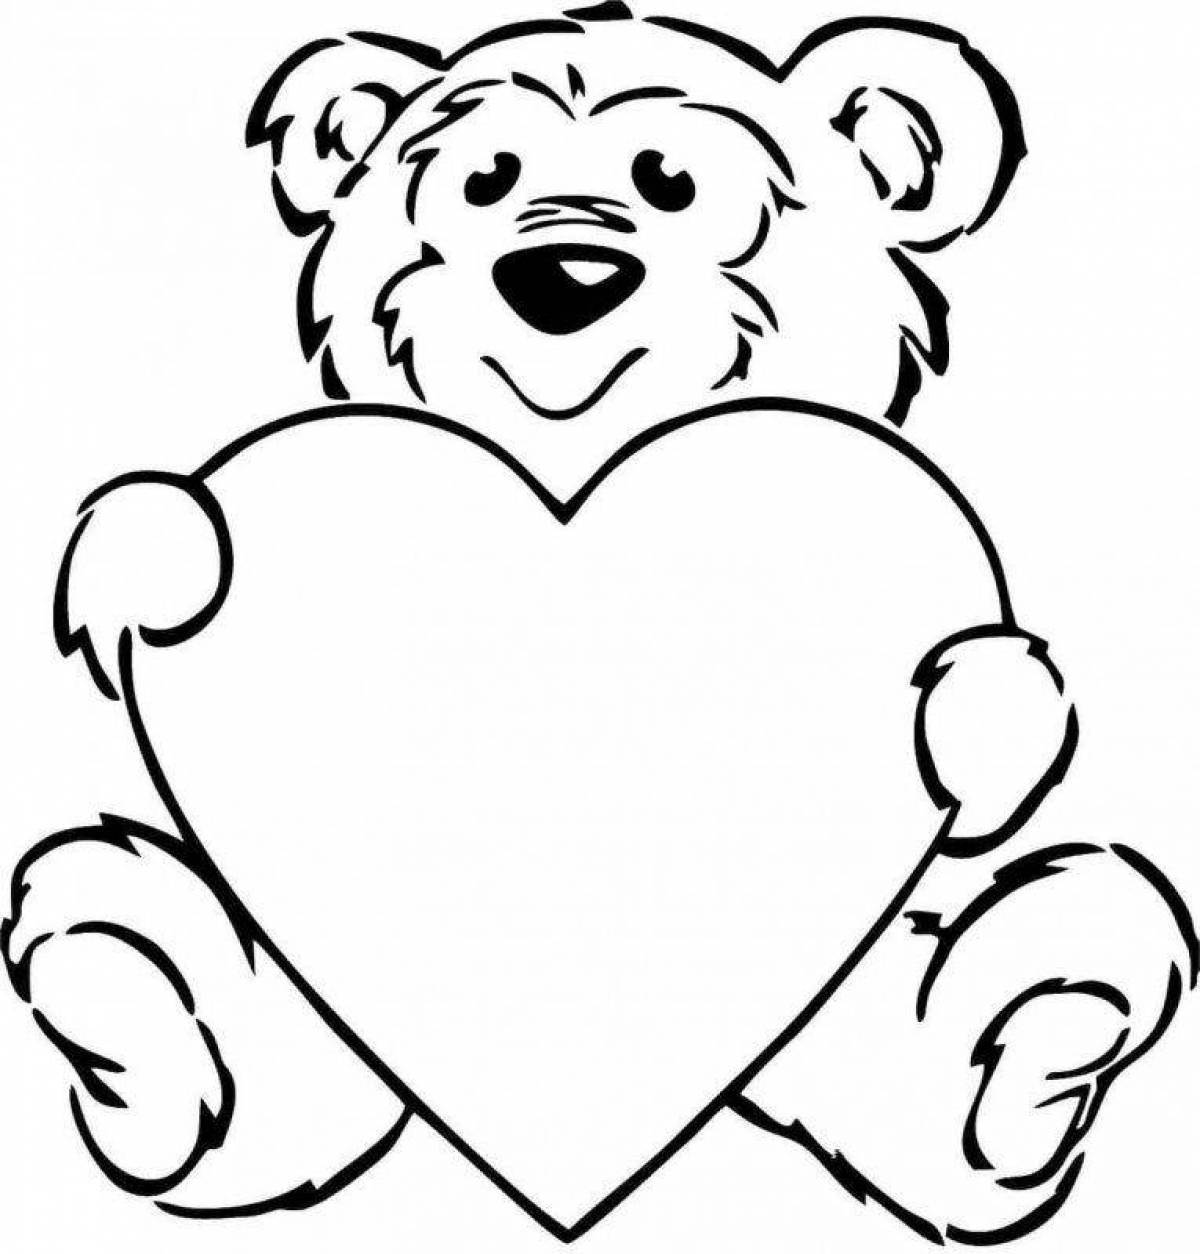 Bear with heart #1